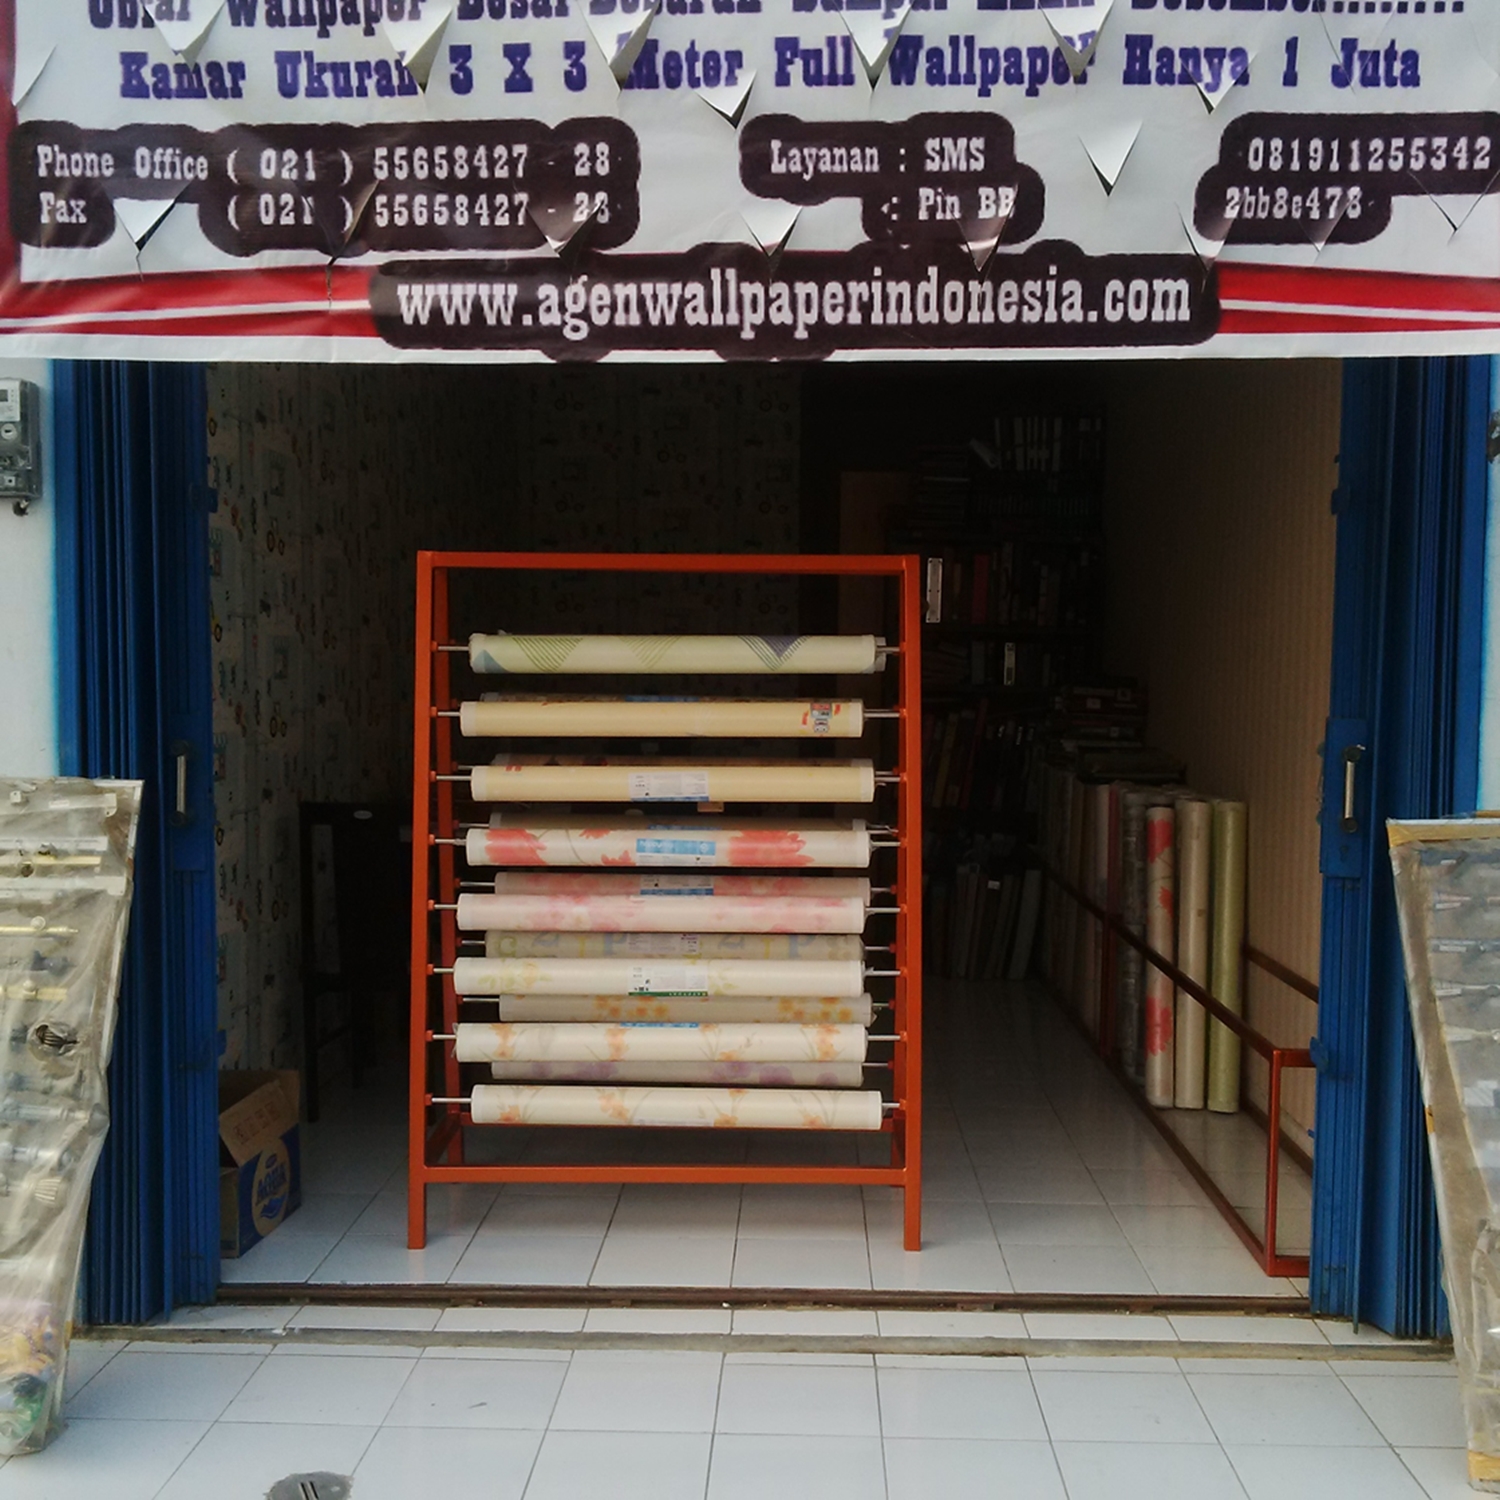 Wallpaper Dinding Rumah Murah Online - Tempat Jual Wallpaper Dinding Di Jakarta , HD Wallpaper & Backgrounds